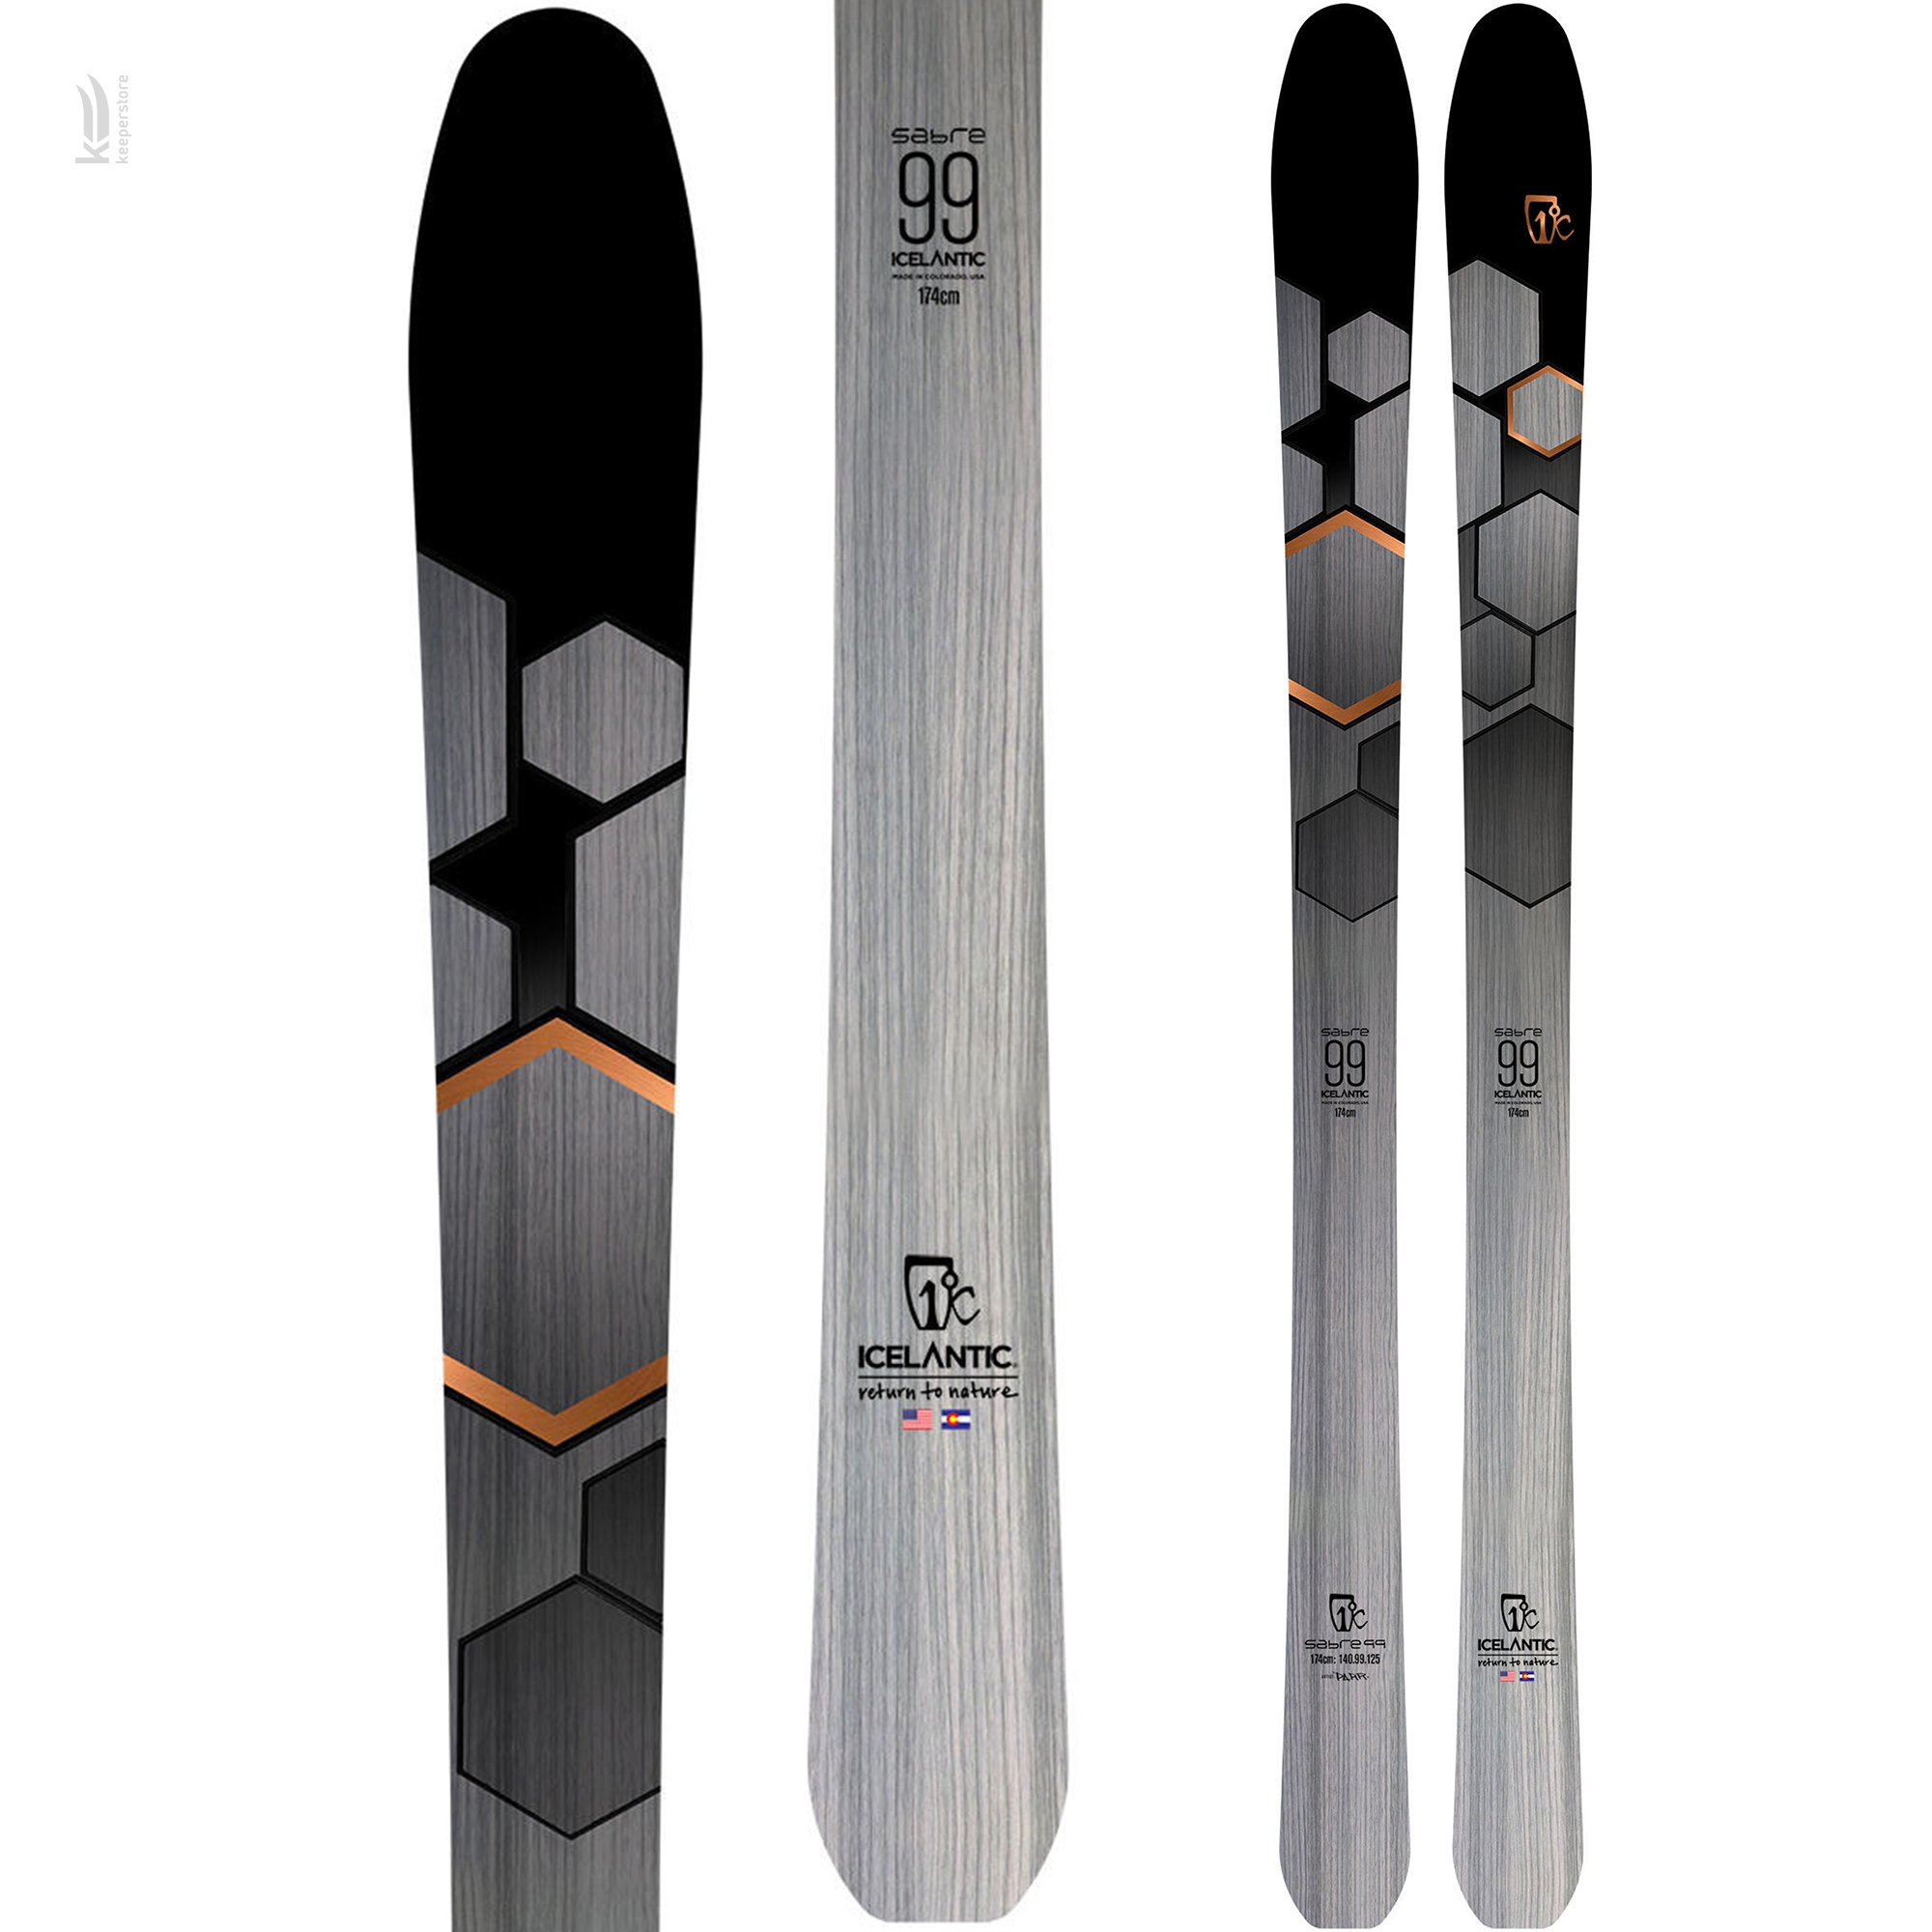 Характеристики лыжи для подготовленного склона Icelantic Sabre 99 2019/2020 174cm